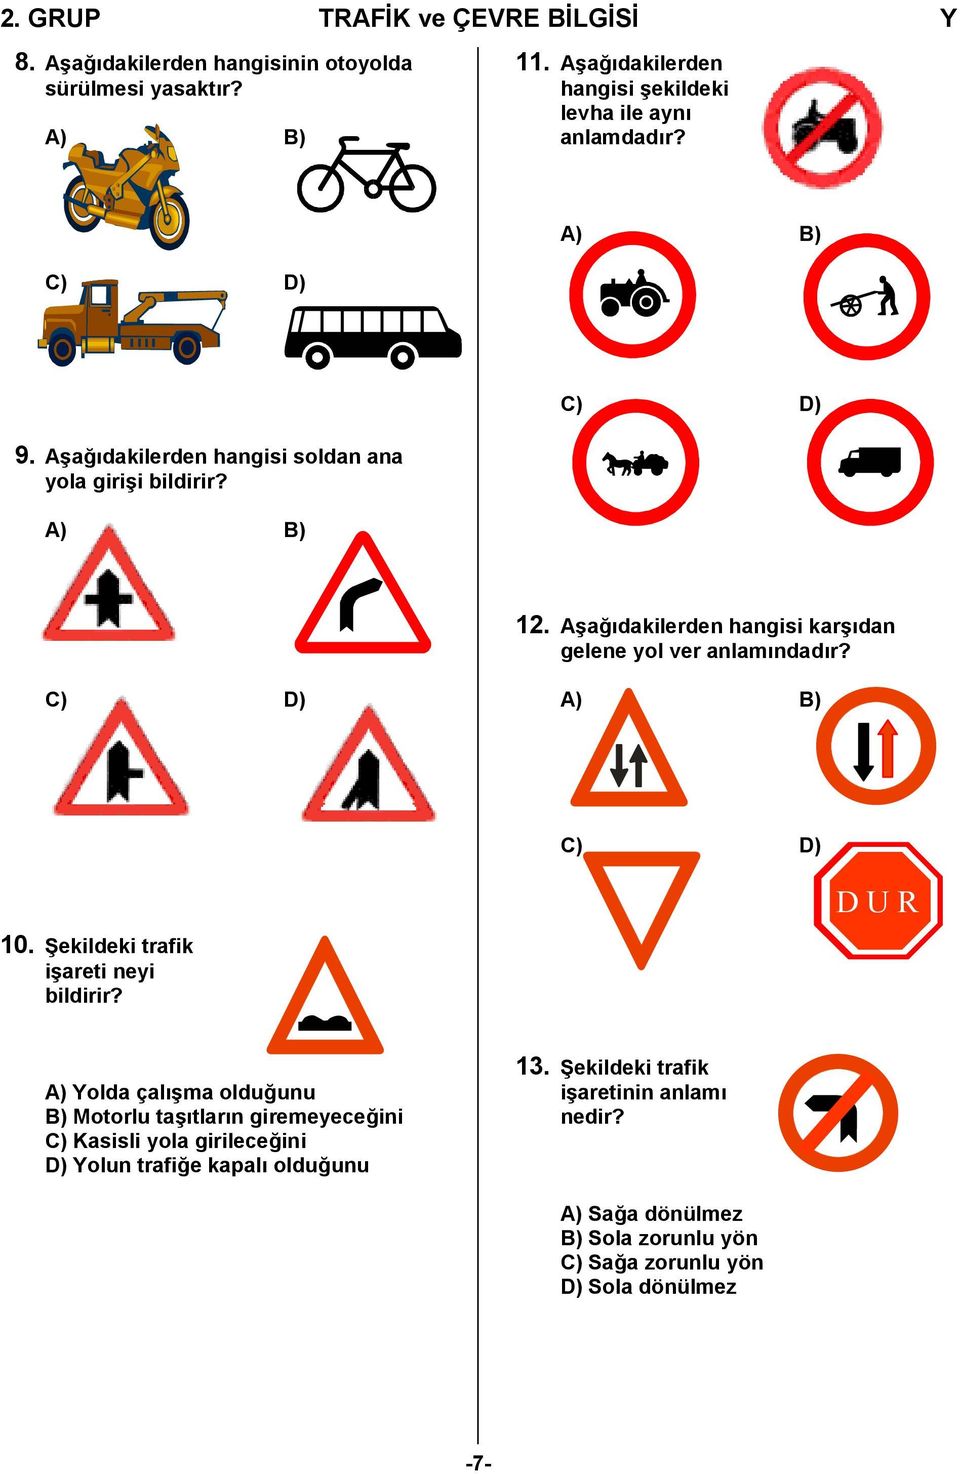 Aşağıdakilerden hangisi karşıdan gelene yol ver anlamındadır? C) D) A) B) C) D) 10. Şekildeki trafik işareti neyi bildirir?